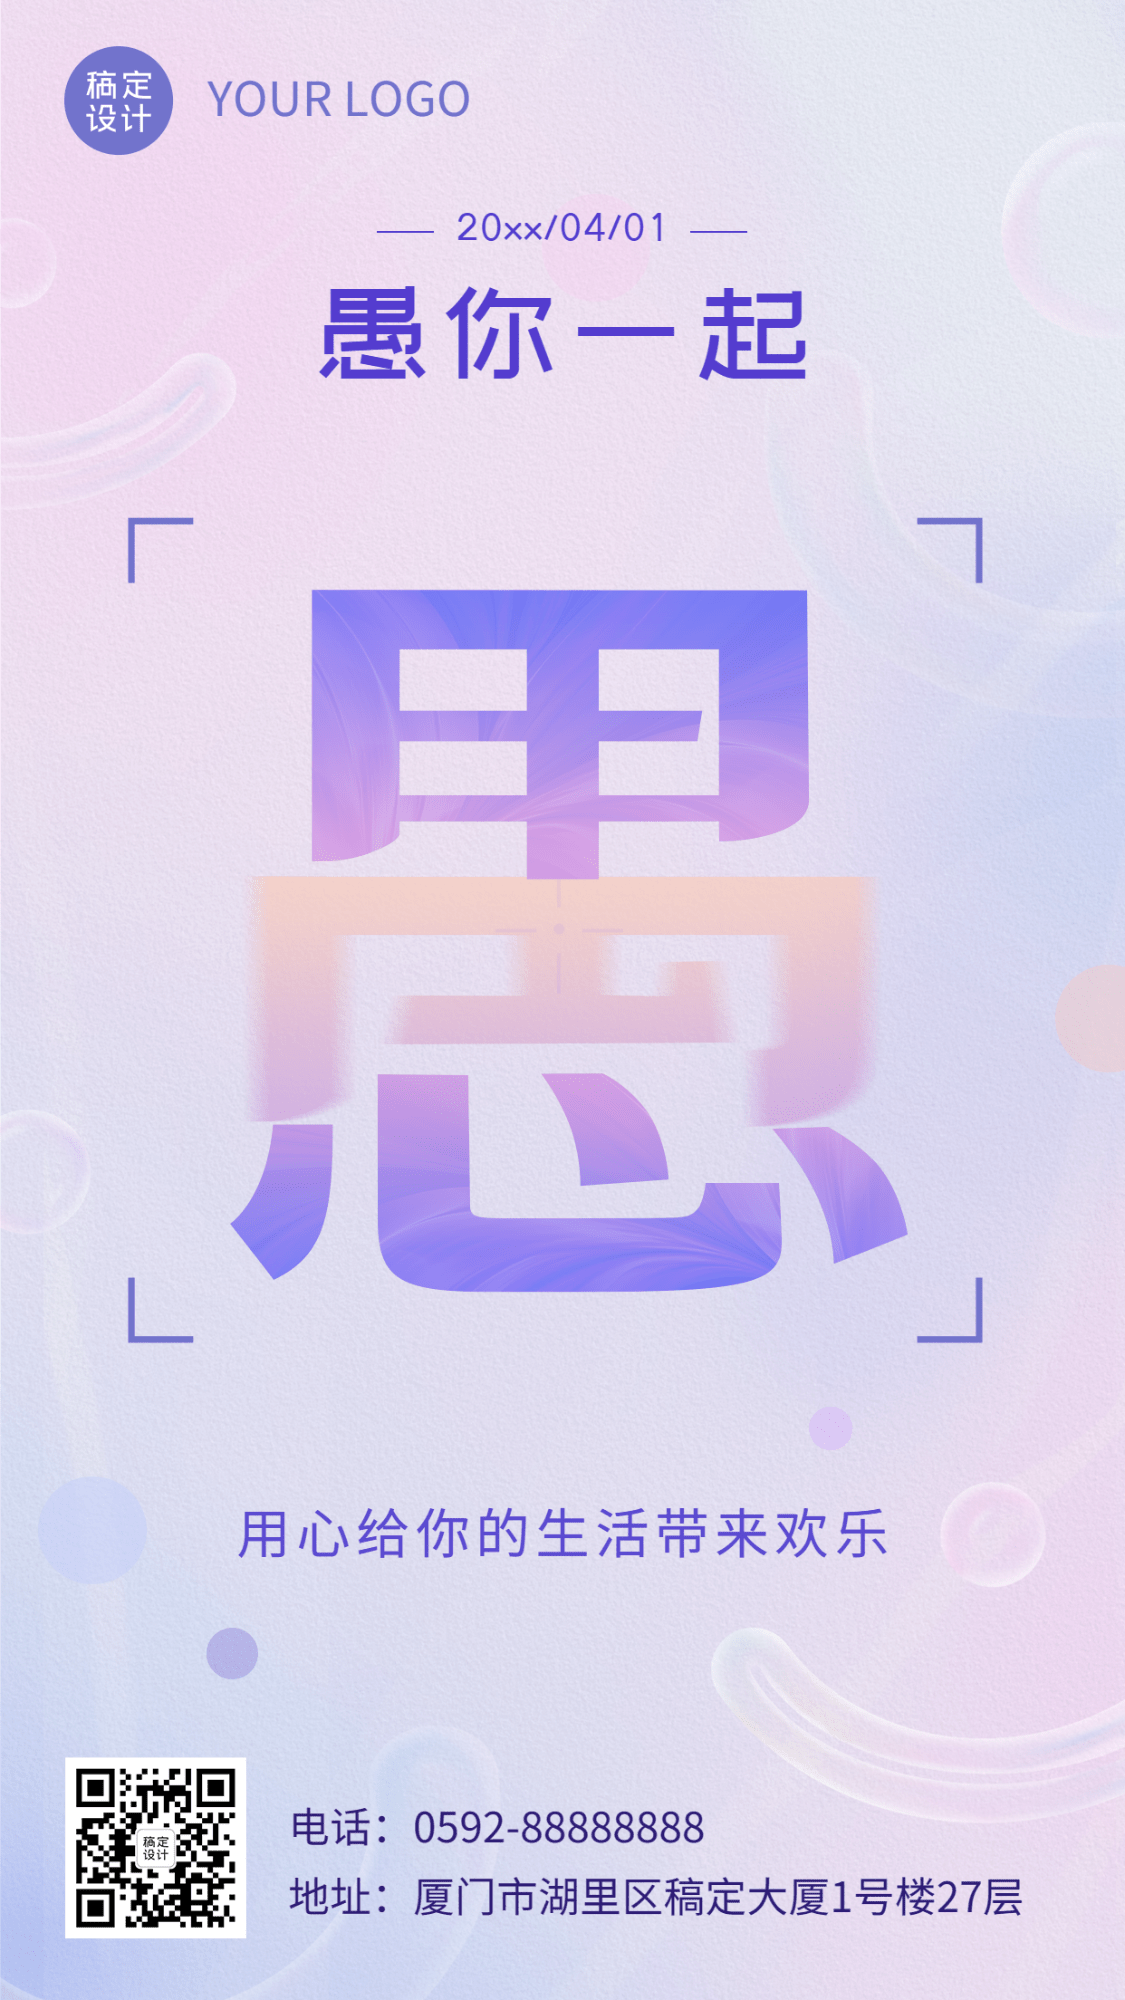 4.1愚人节节日祝福宣传手机海报预览效果